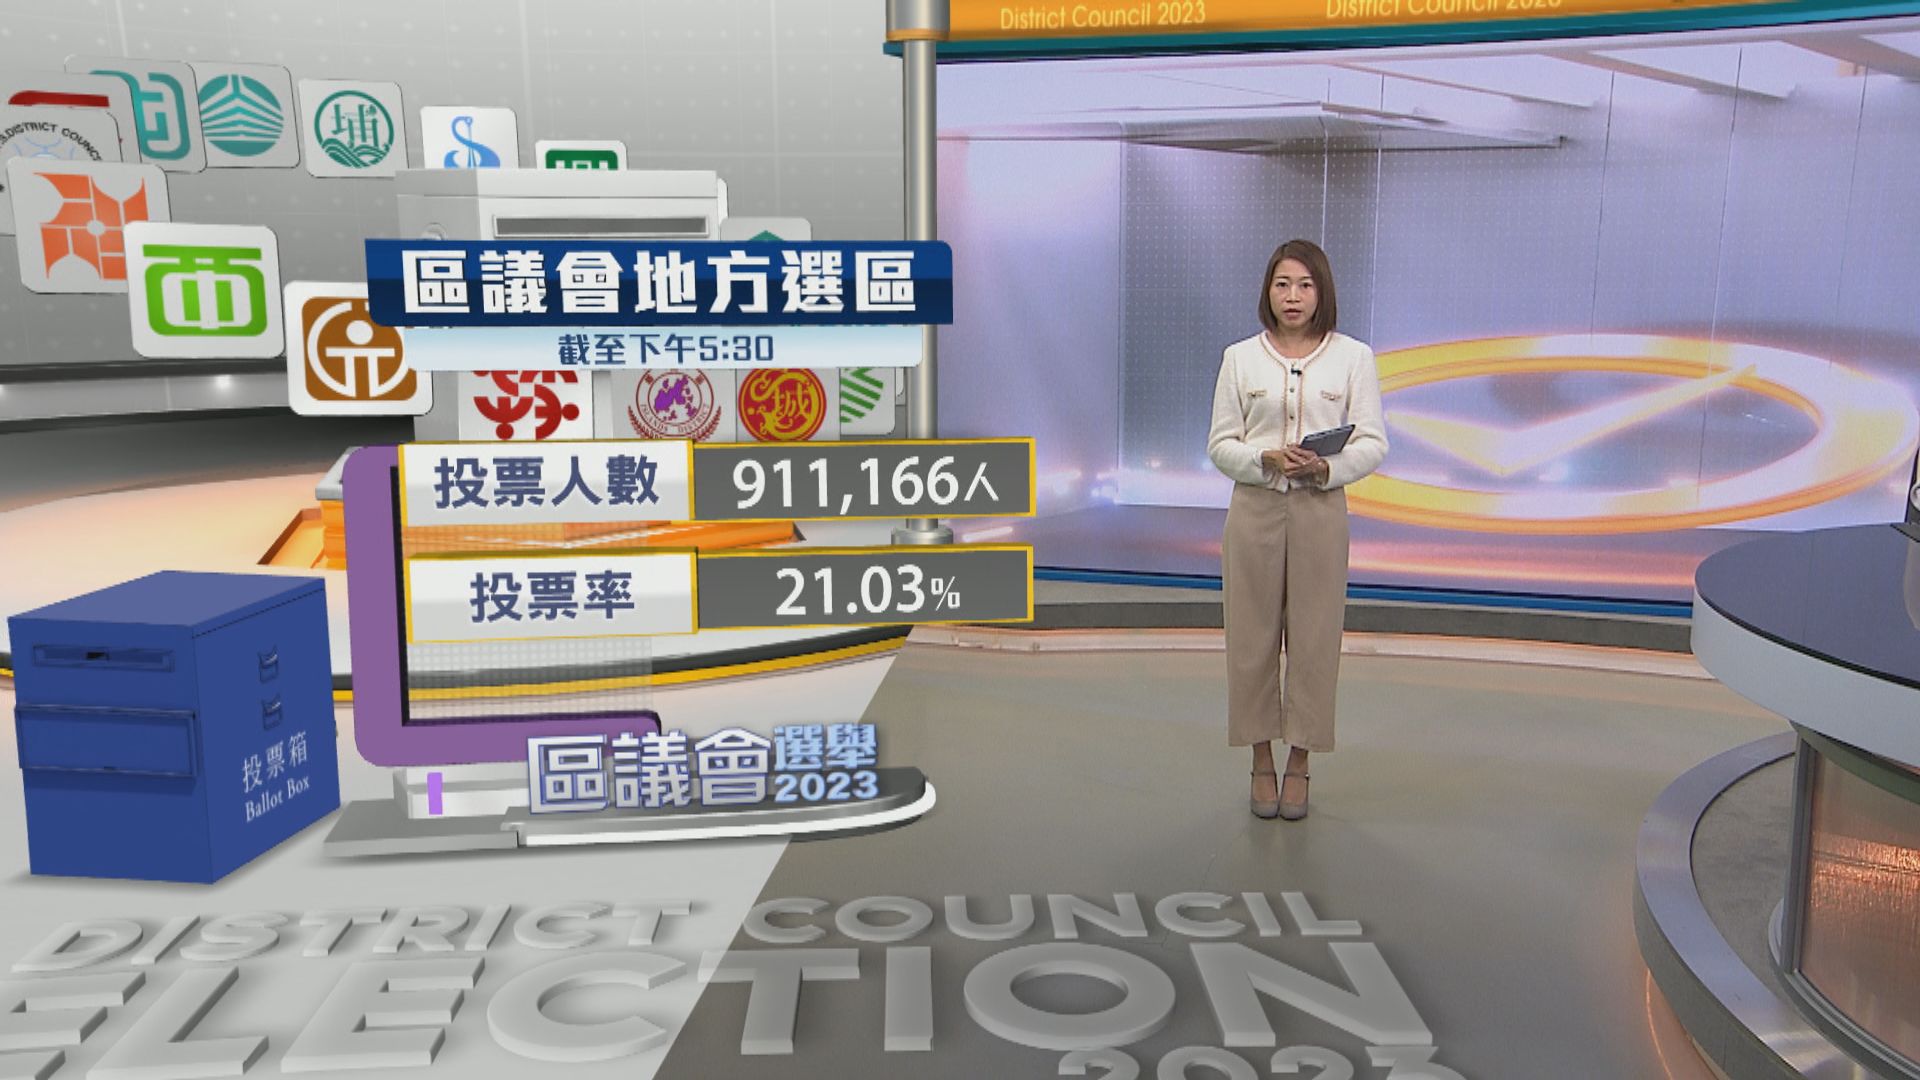 【區議會選舉】截至下午五時半 逾91萬人投票 投票率21.03%